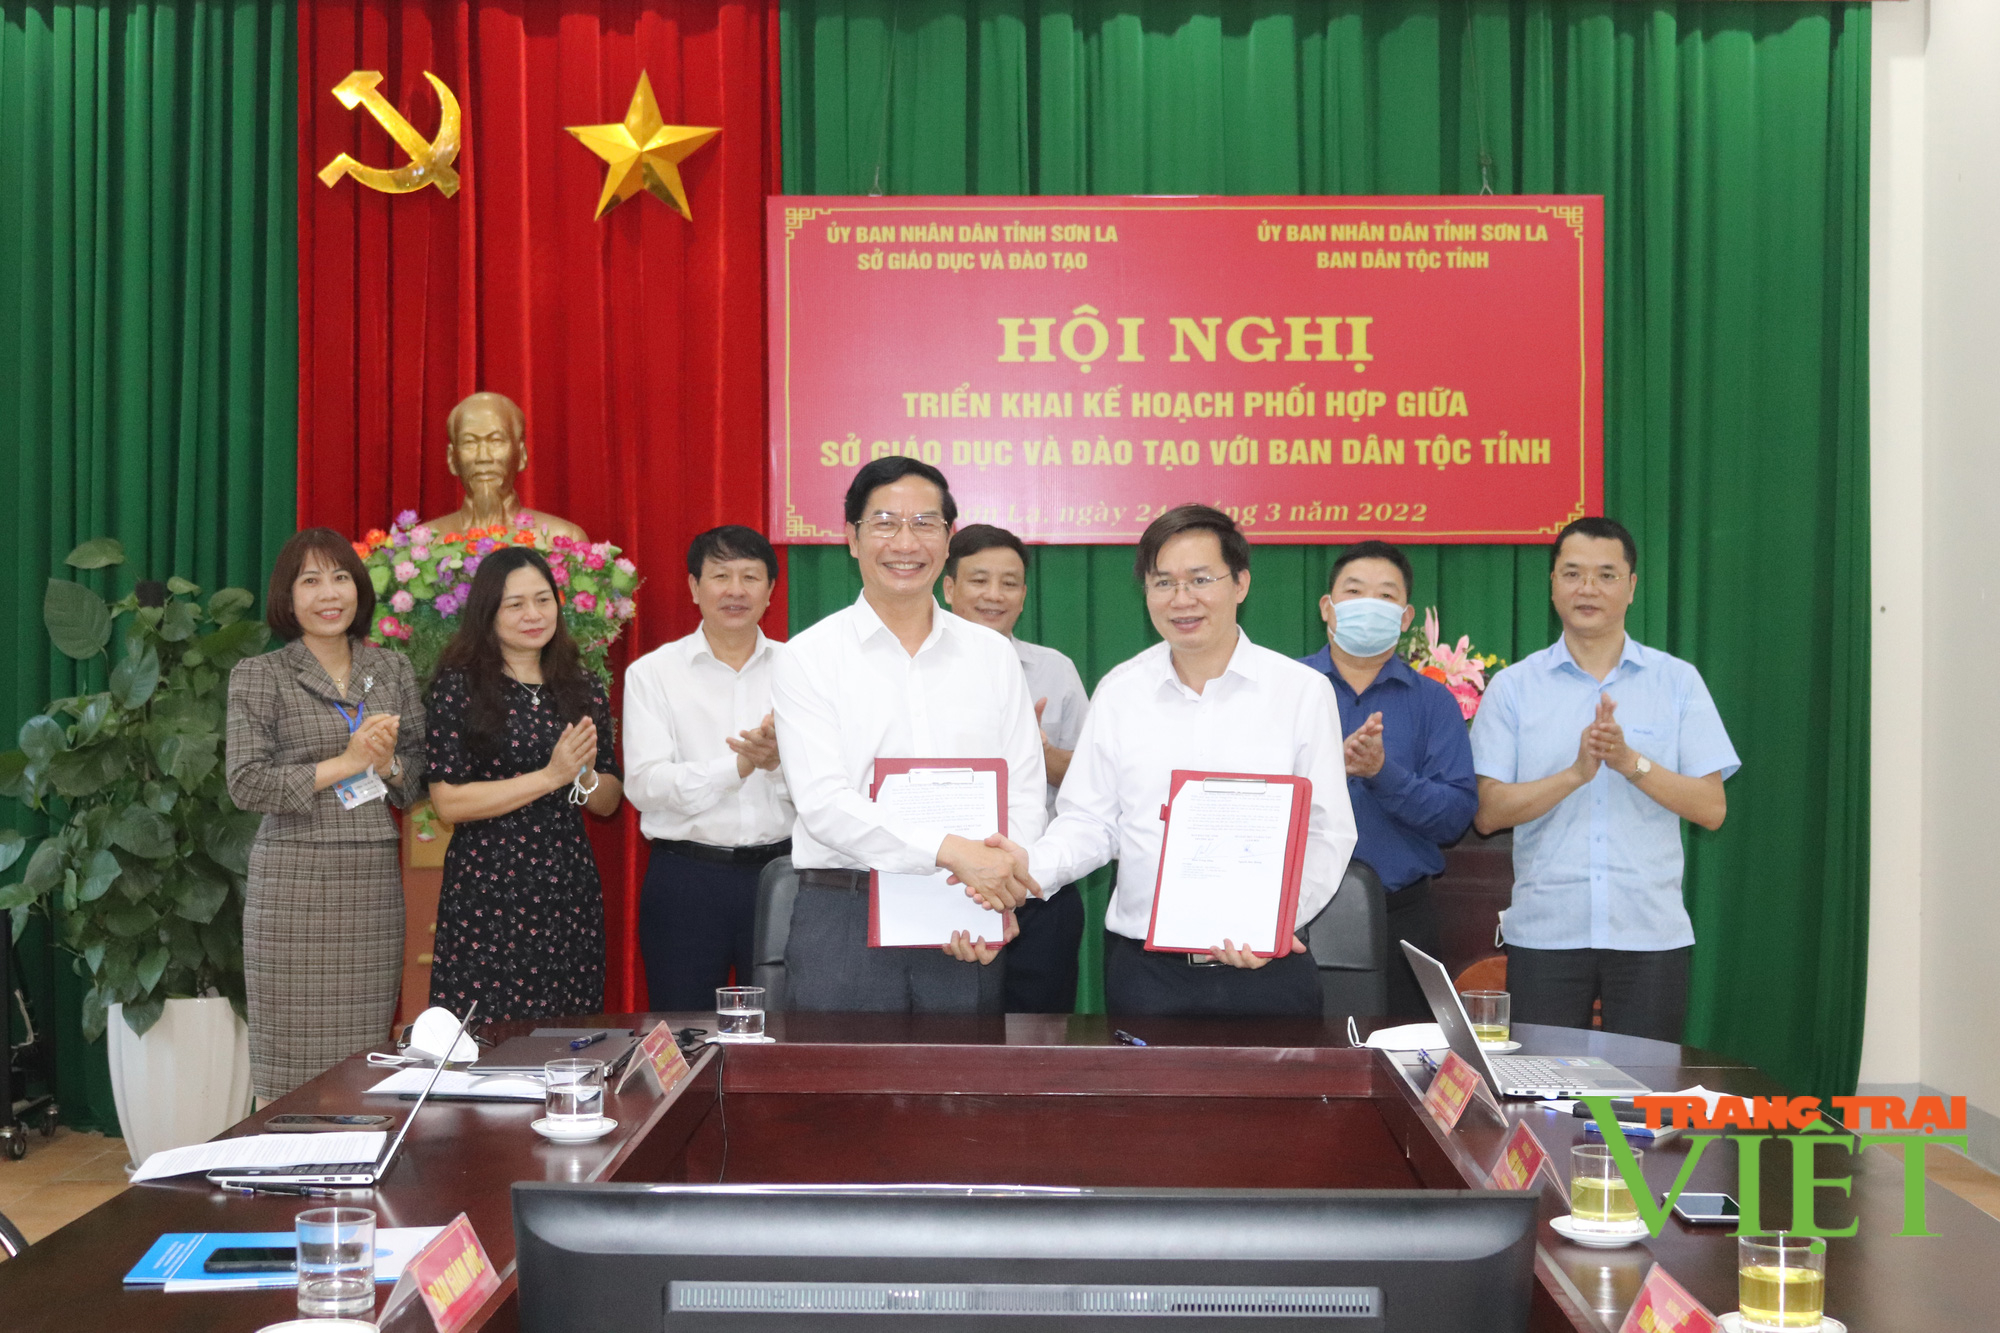 Sơn La: Hội nghị triển khai kế hoạch phối hợp công tác giữa Sở GDĐT tỉnh với Ban Dân tộc tỉnh - Ảnh 4.